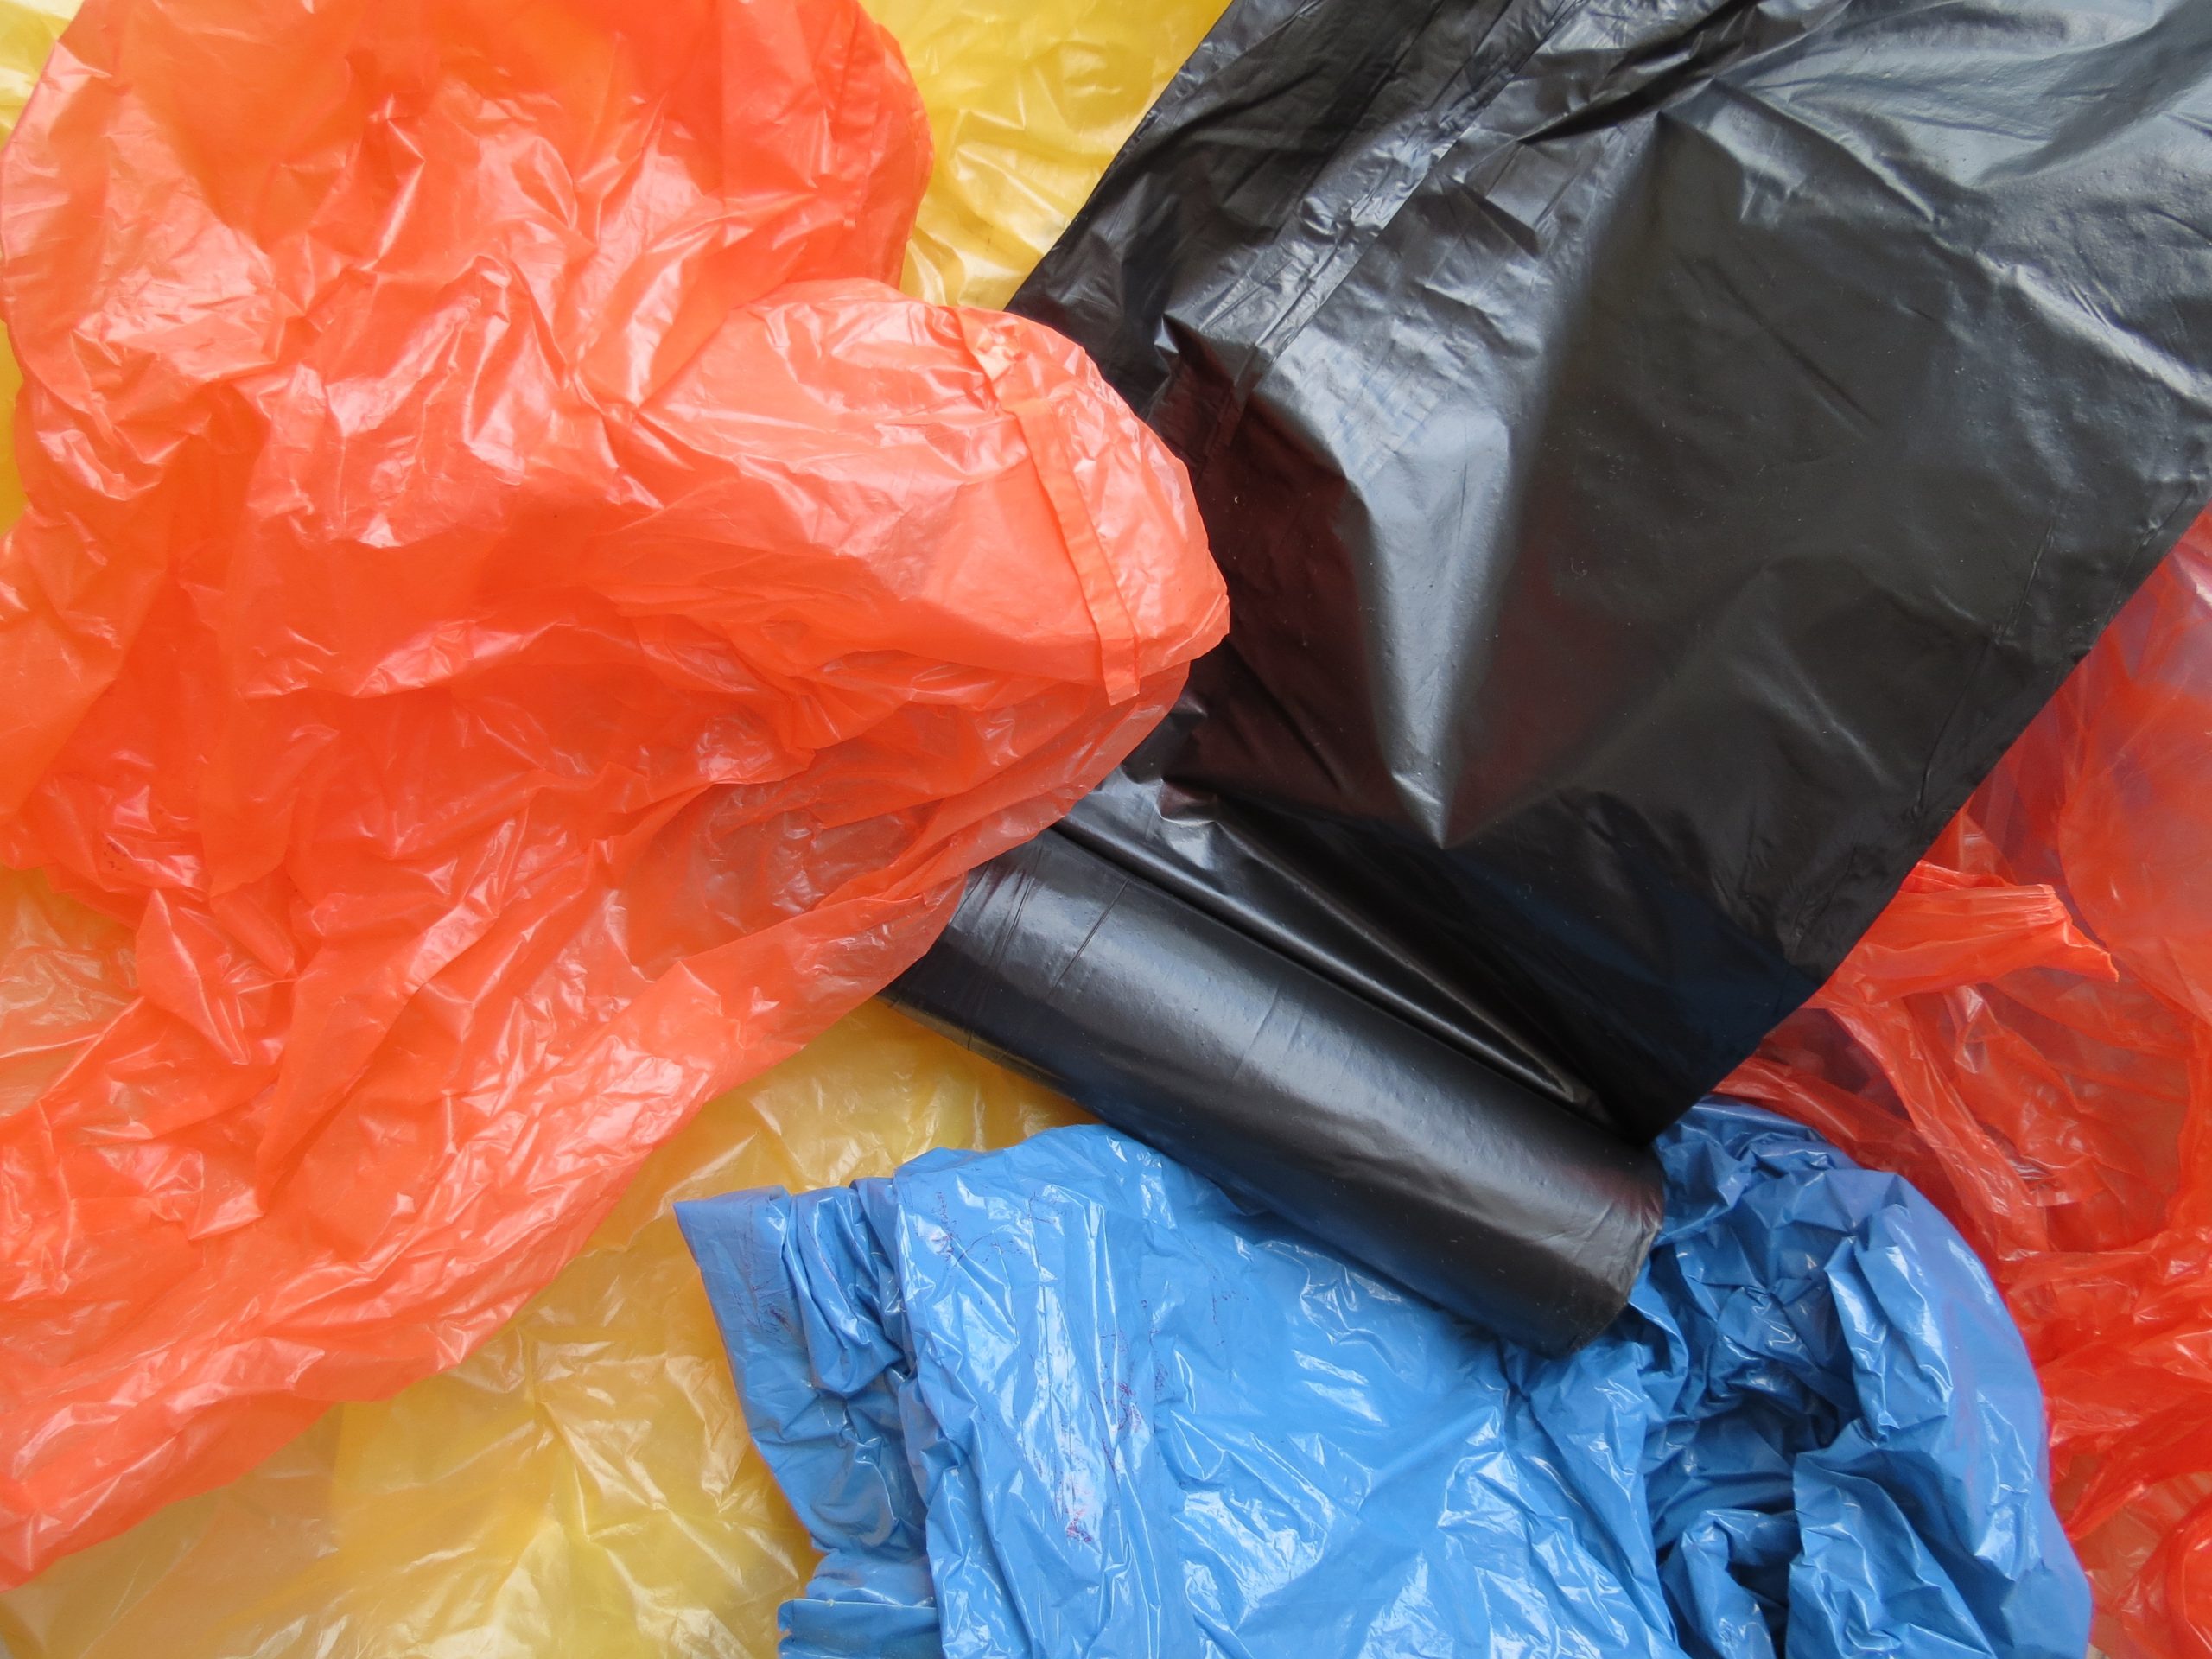 Lisboa quer acabar com sacos de plástico nos bairros históricos